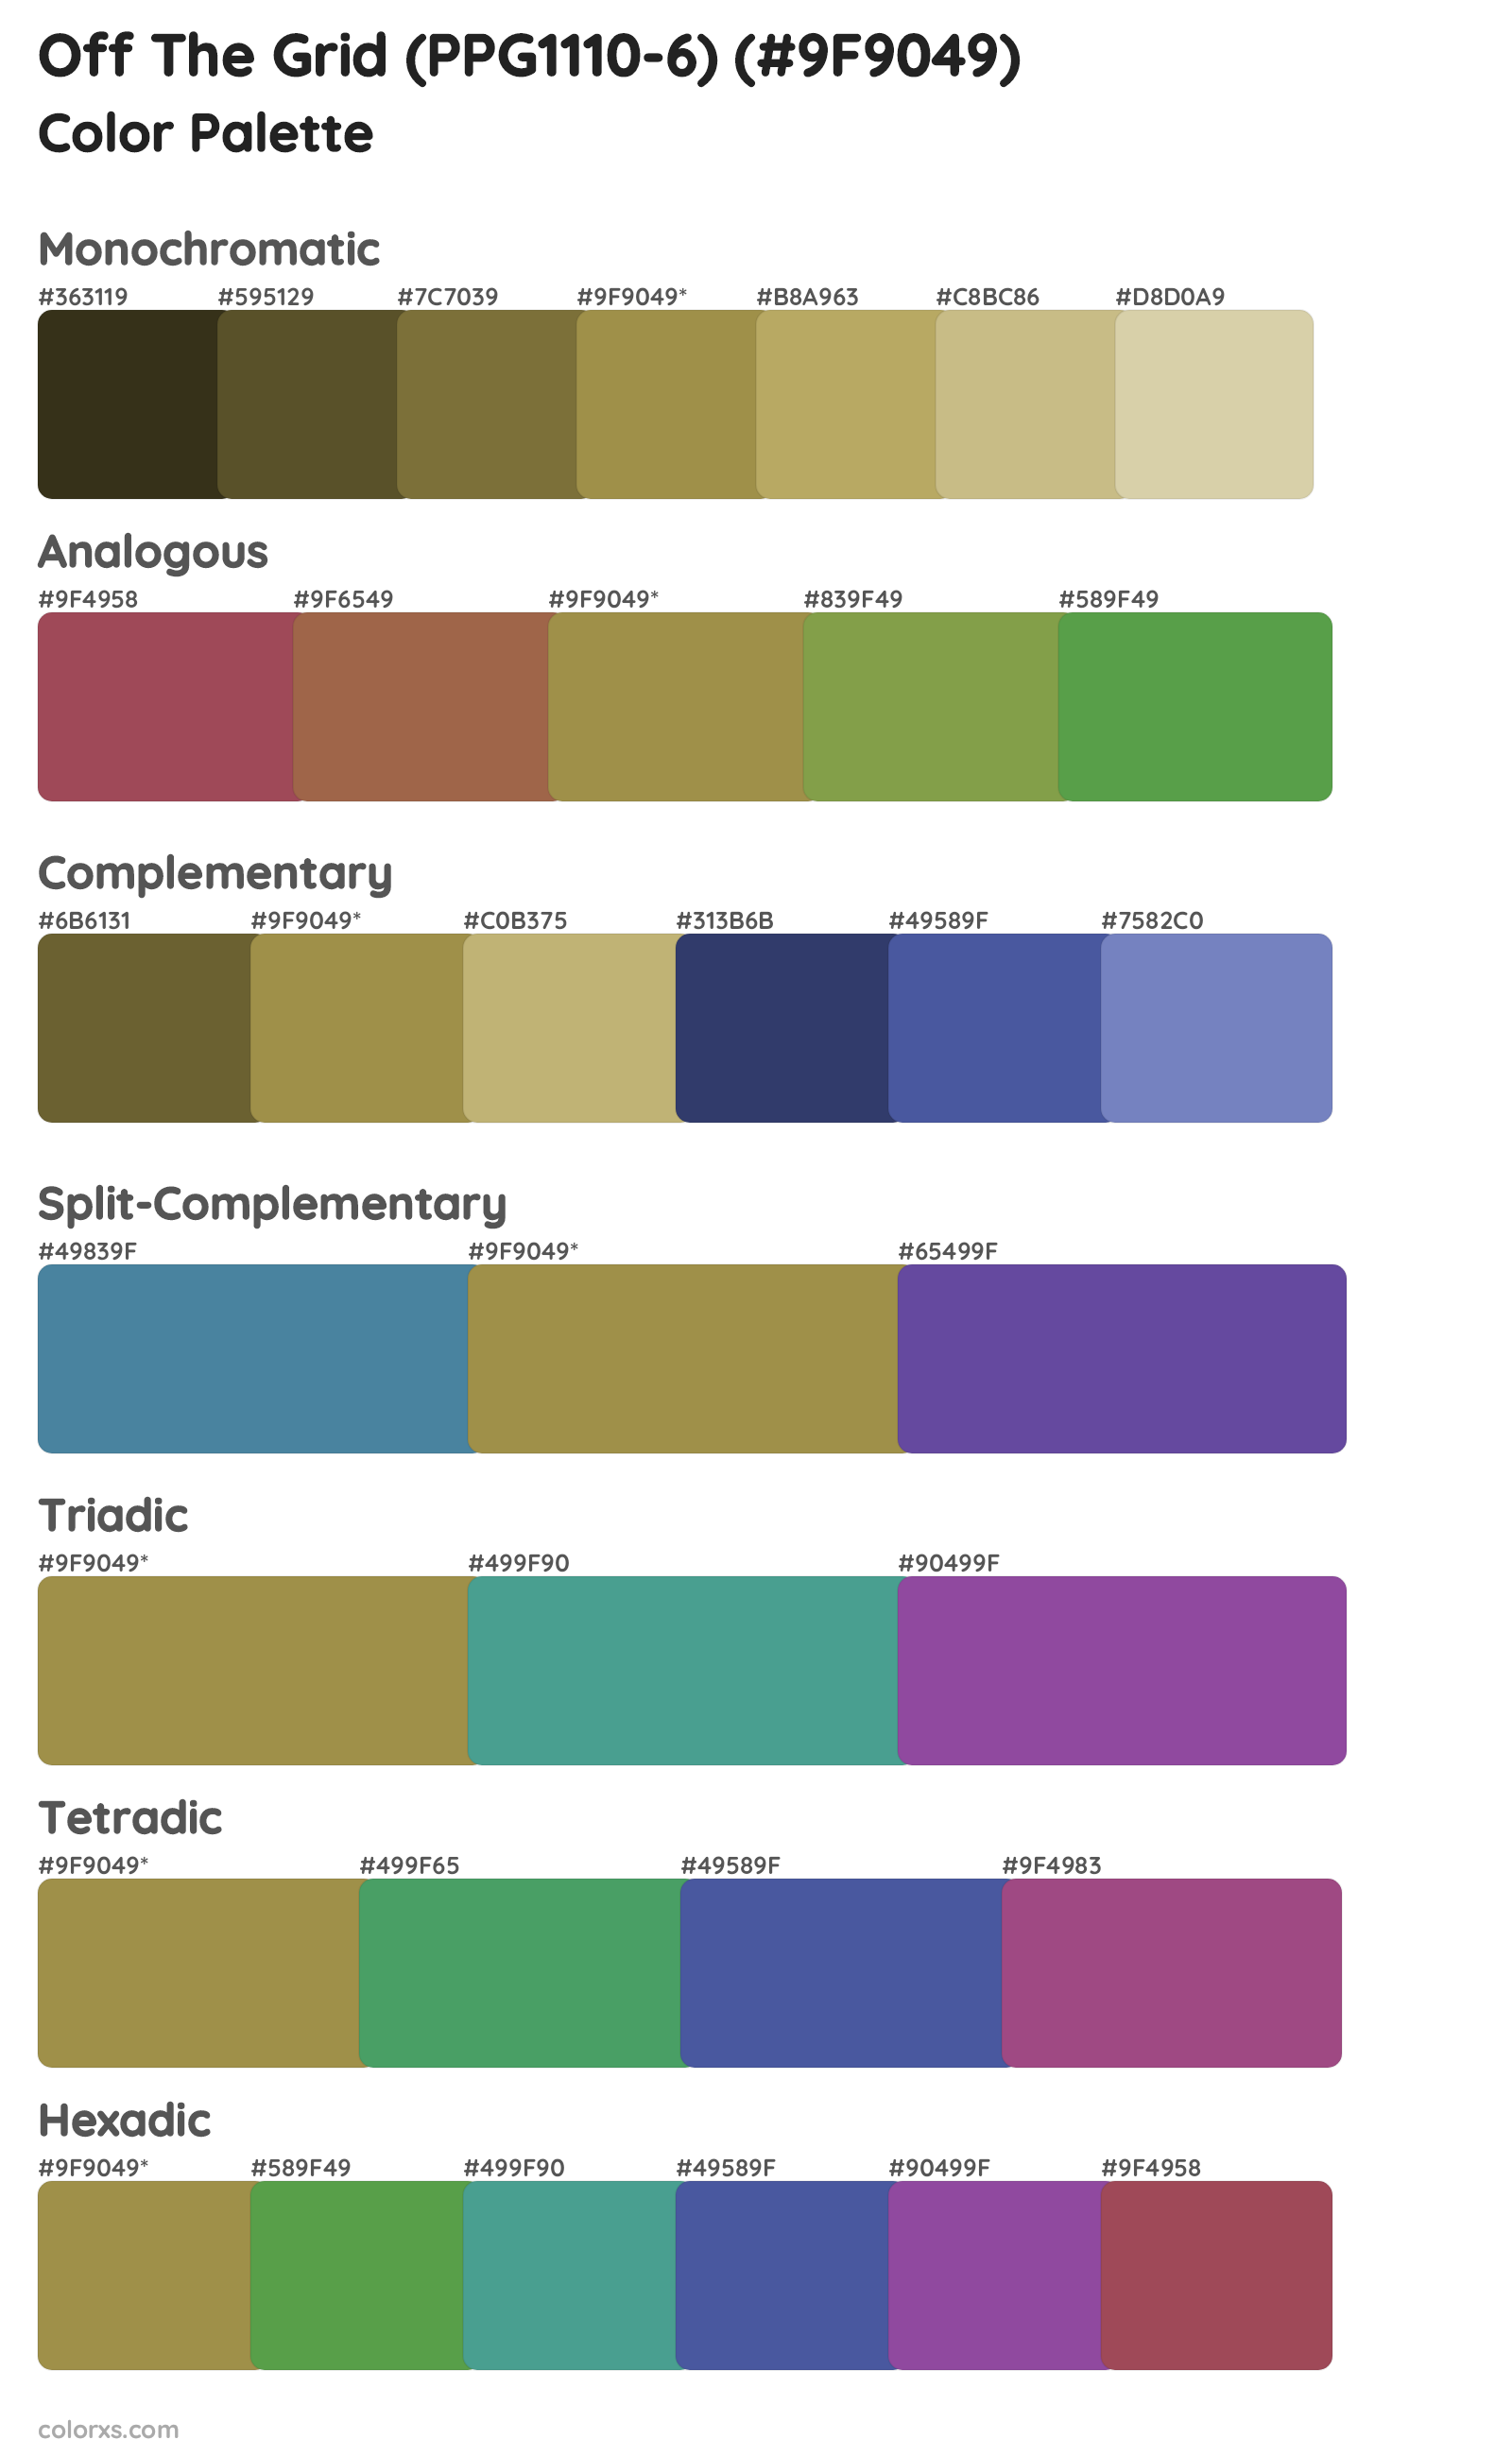 Off The Grid (PPG1110-6) Color Scheme Palettes